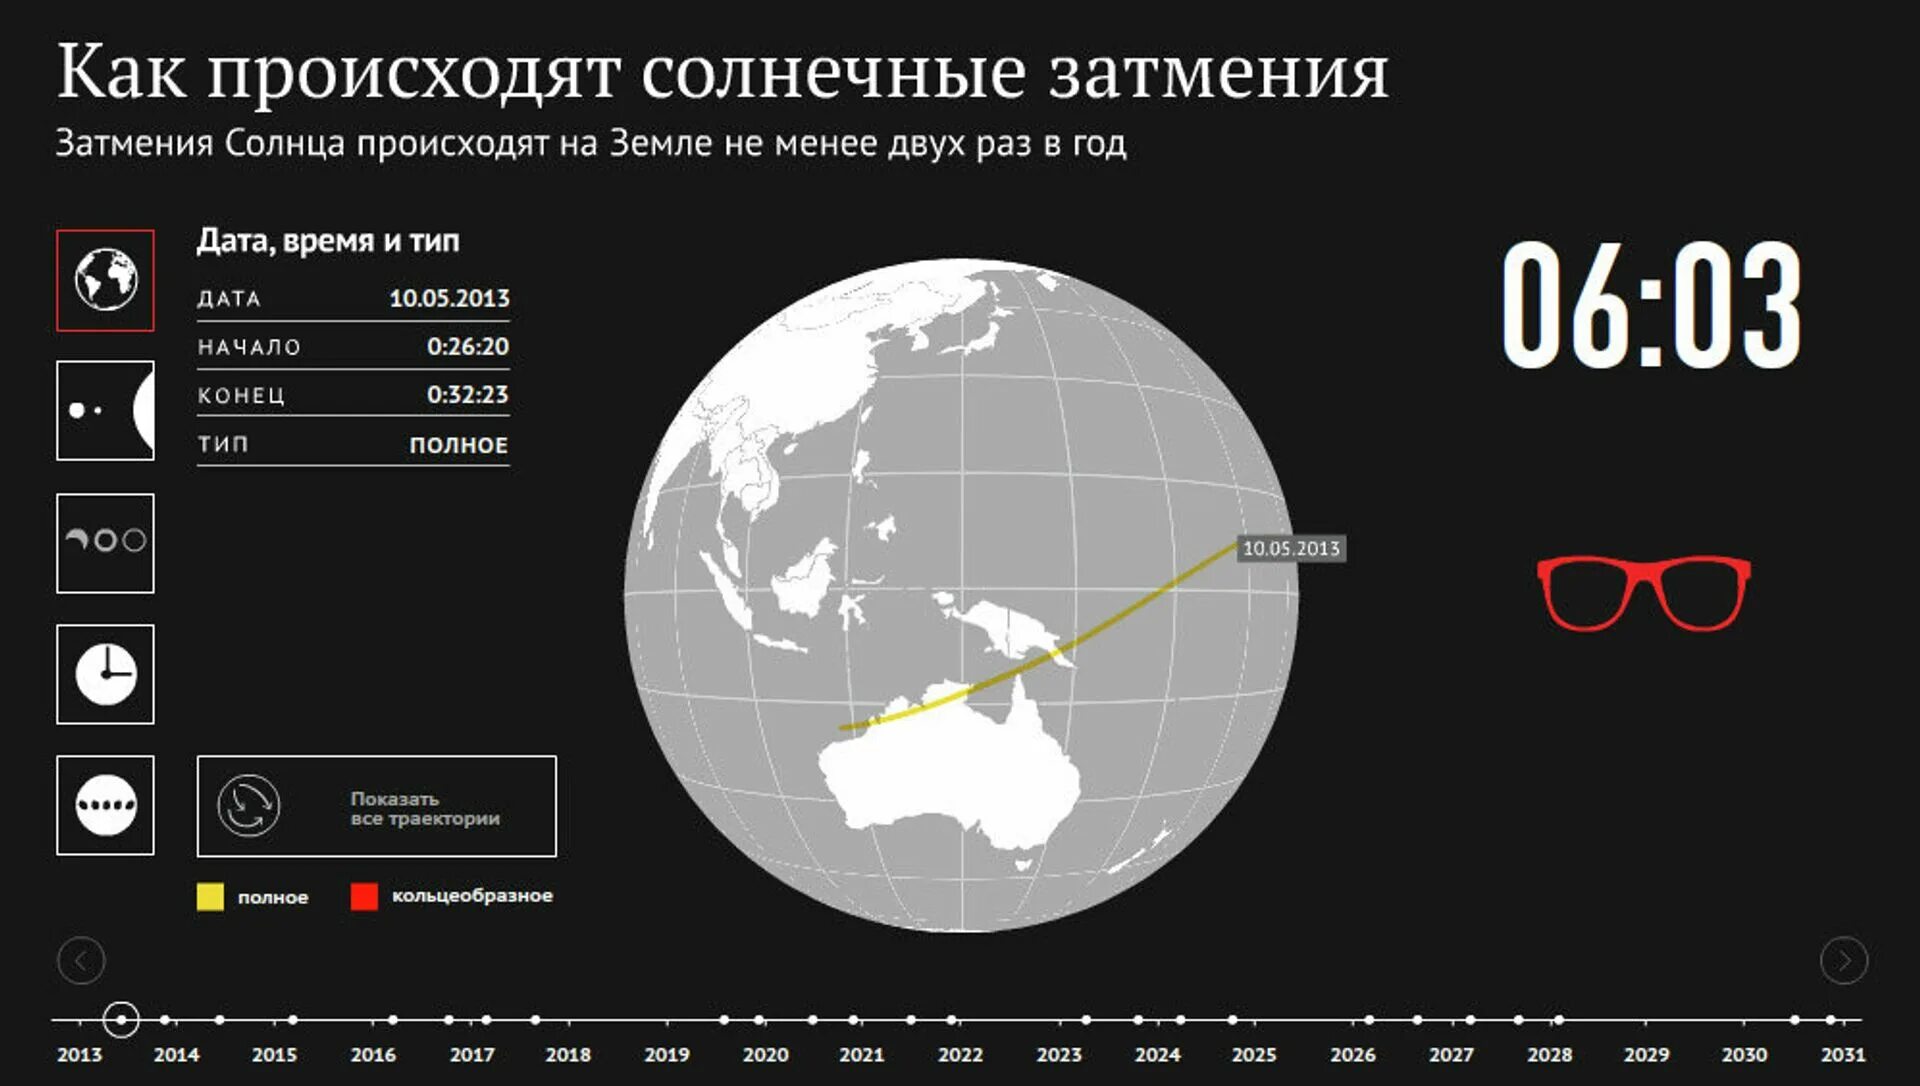 Солнечное затмение даты когда было. Солнечное затмение инфографика. Полное солнечное затмение в России. Когда следующее полное солнечное затмение. Последнее солнечное затмение в России.